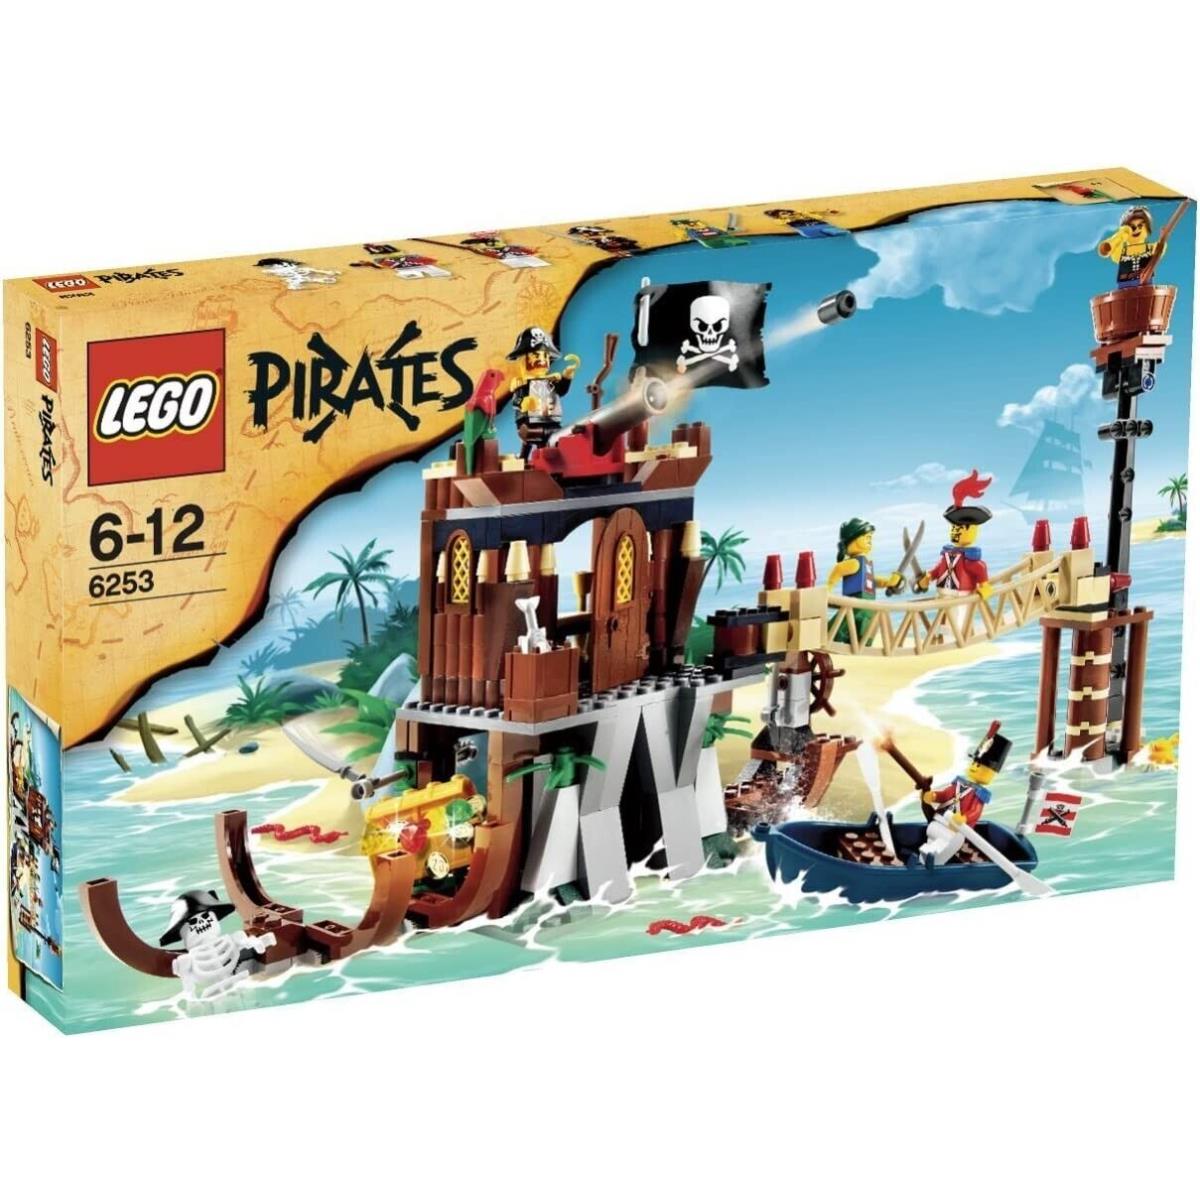 Lego Pirates Shipwreck Hideout 6253